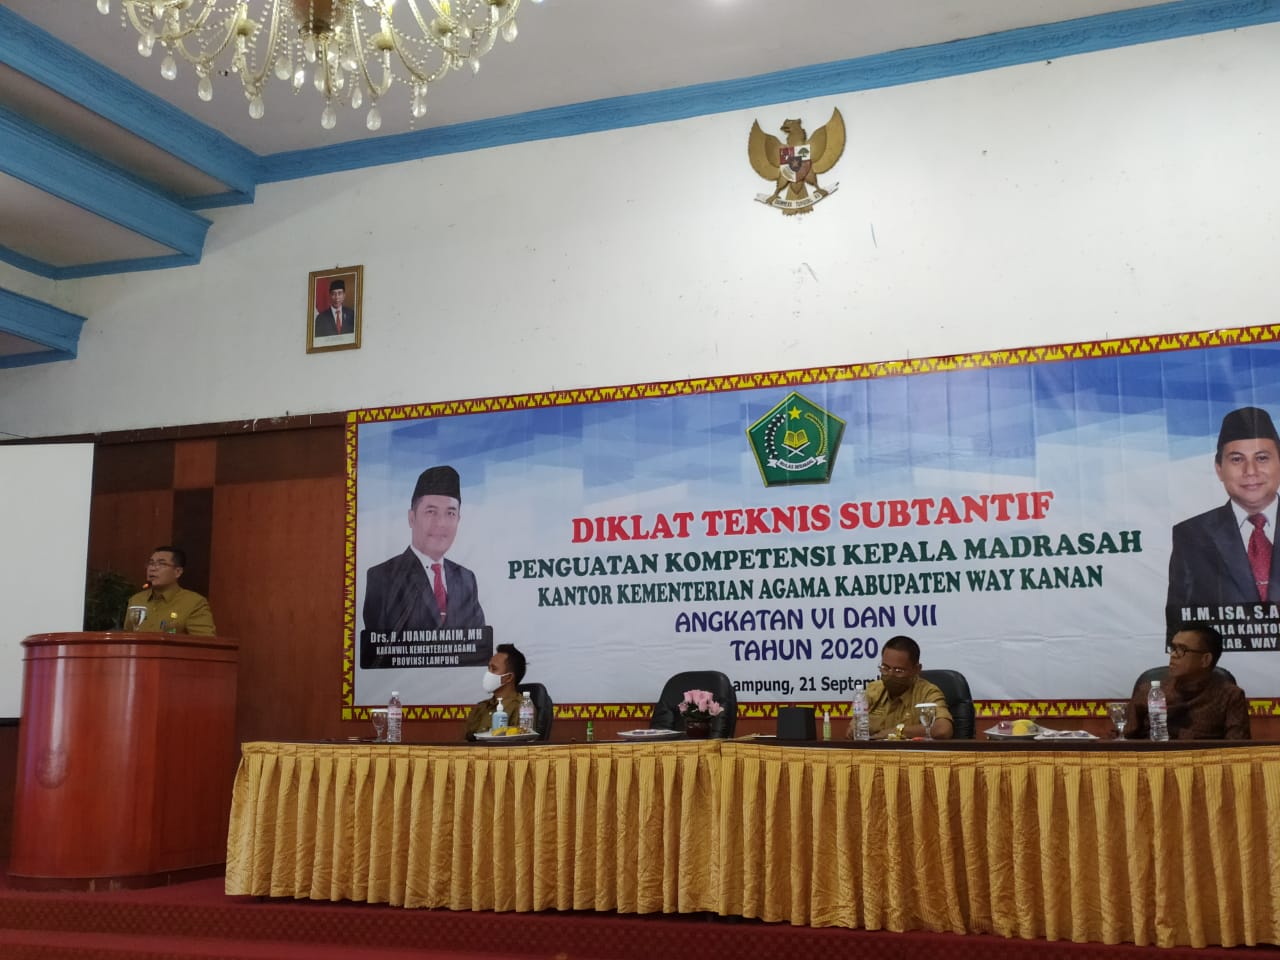 Diklat Kerjasama antara Balai Diklat Keagamaan Palembang dengan Kementerian agama pada Kabupaten Way Kanan